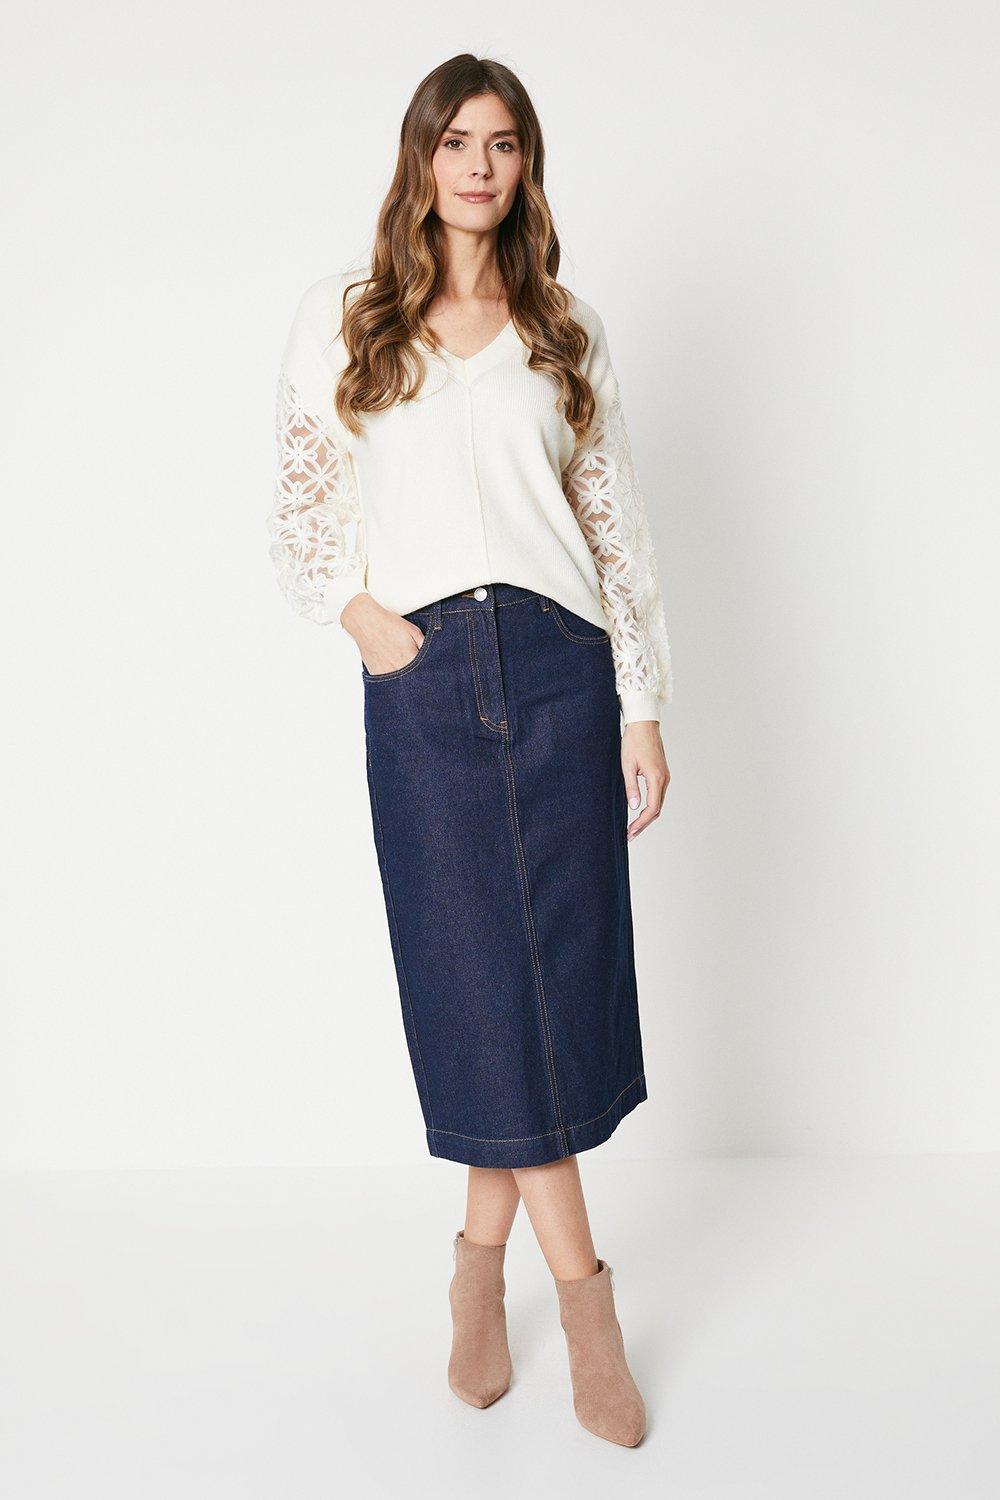 Джинсовая юбка-миди Wallis, синий 12⠀storeez джинсовая юбка миди с декоративной планкой